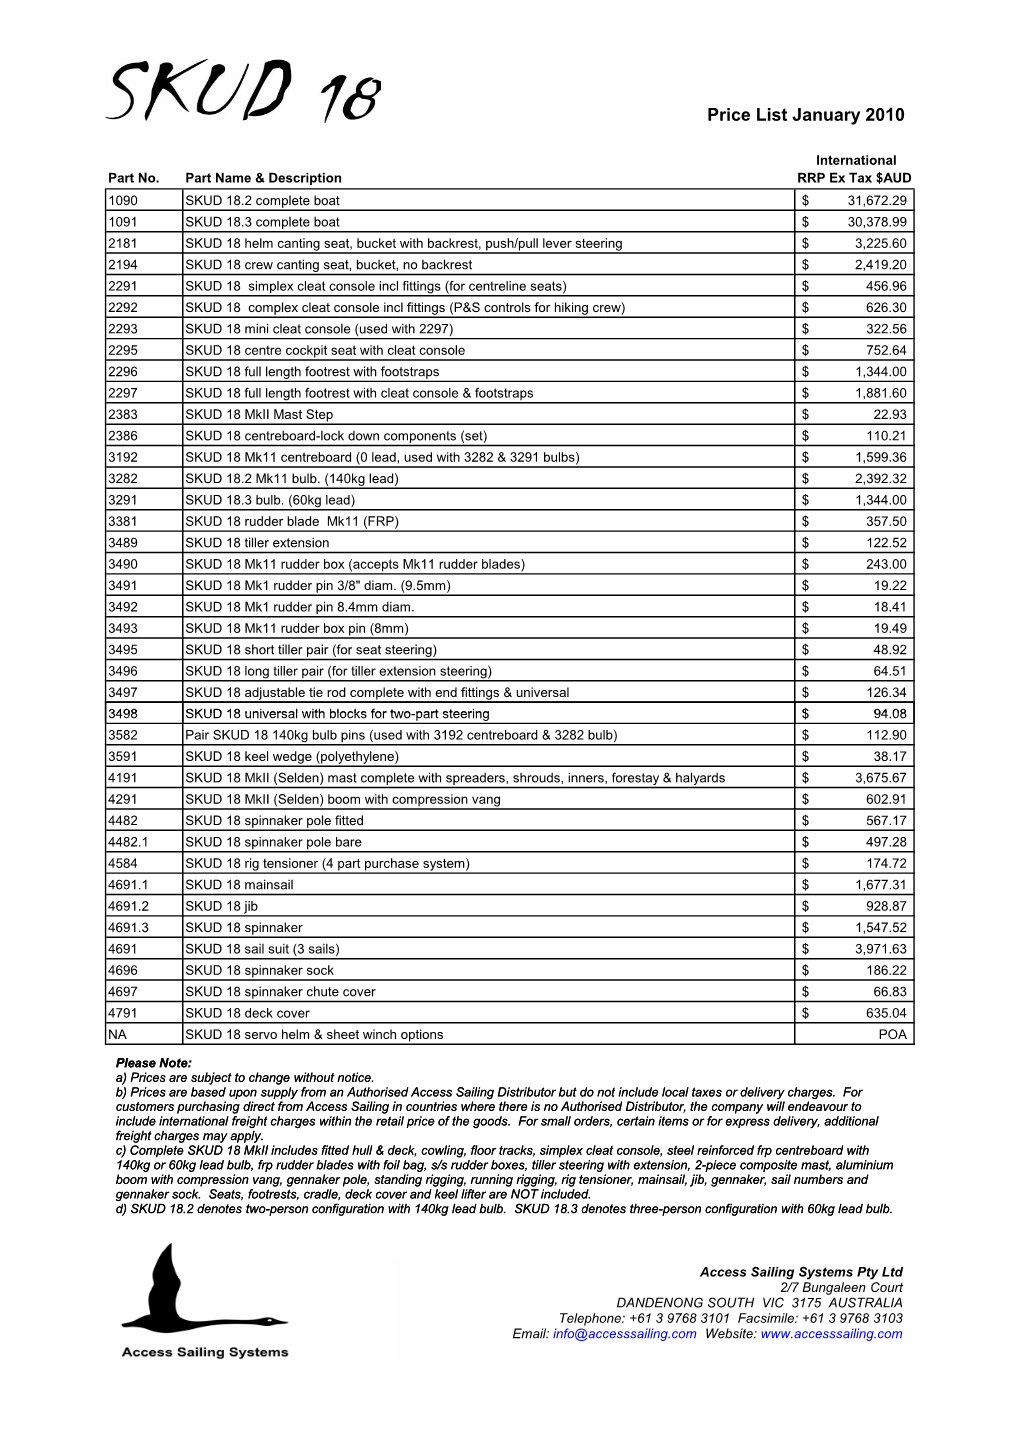 SKUD 18 Price List January 2010